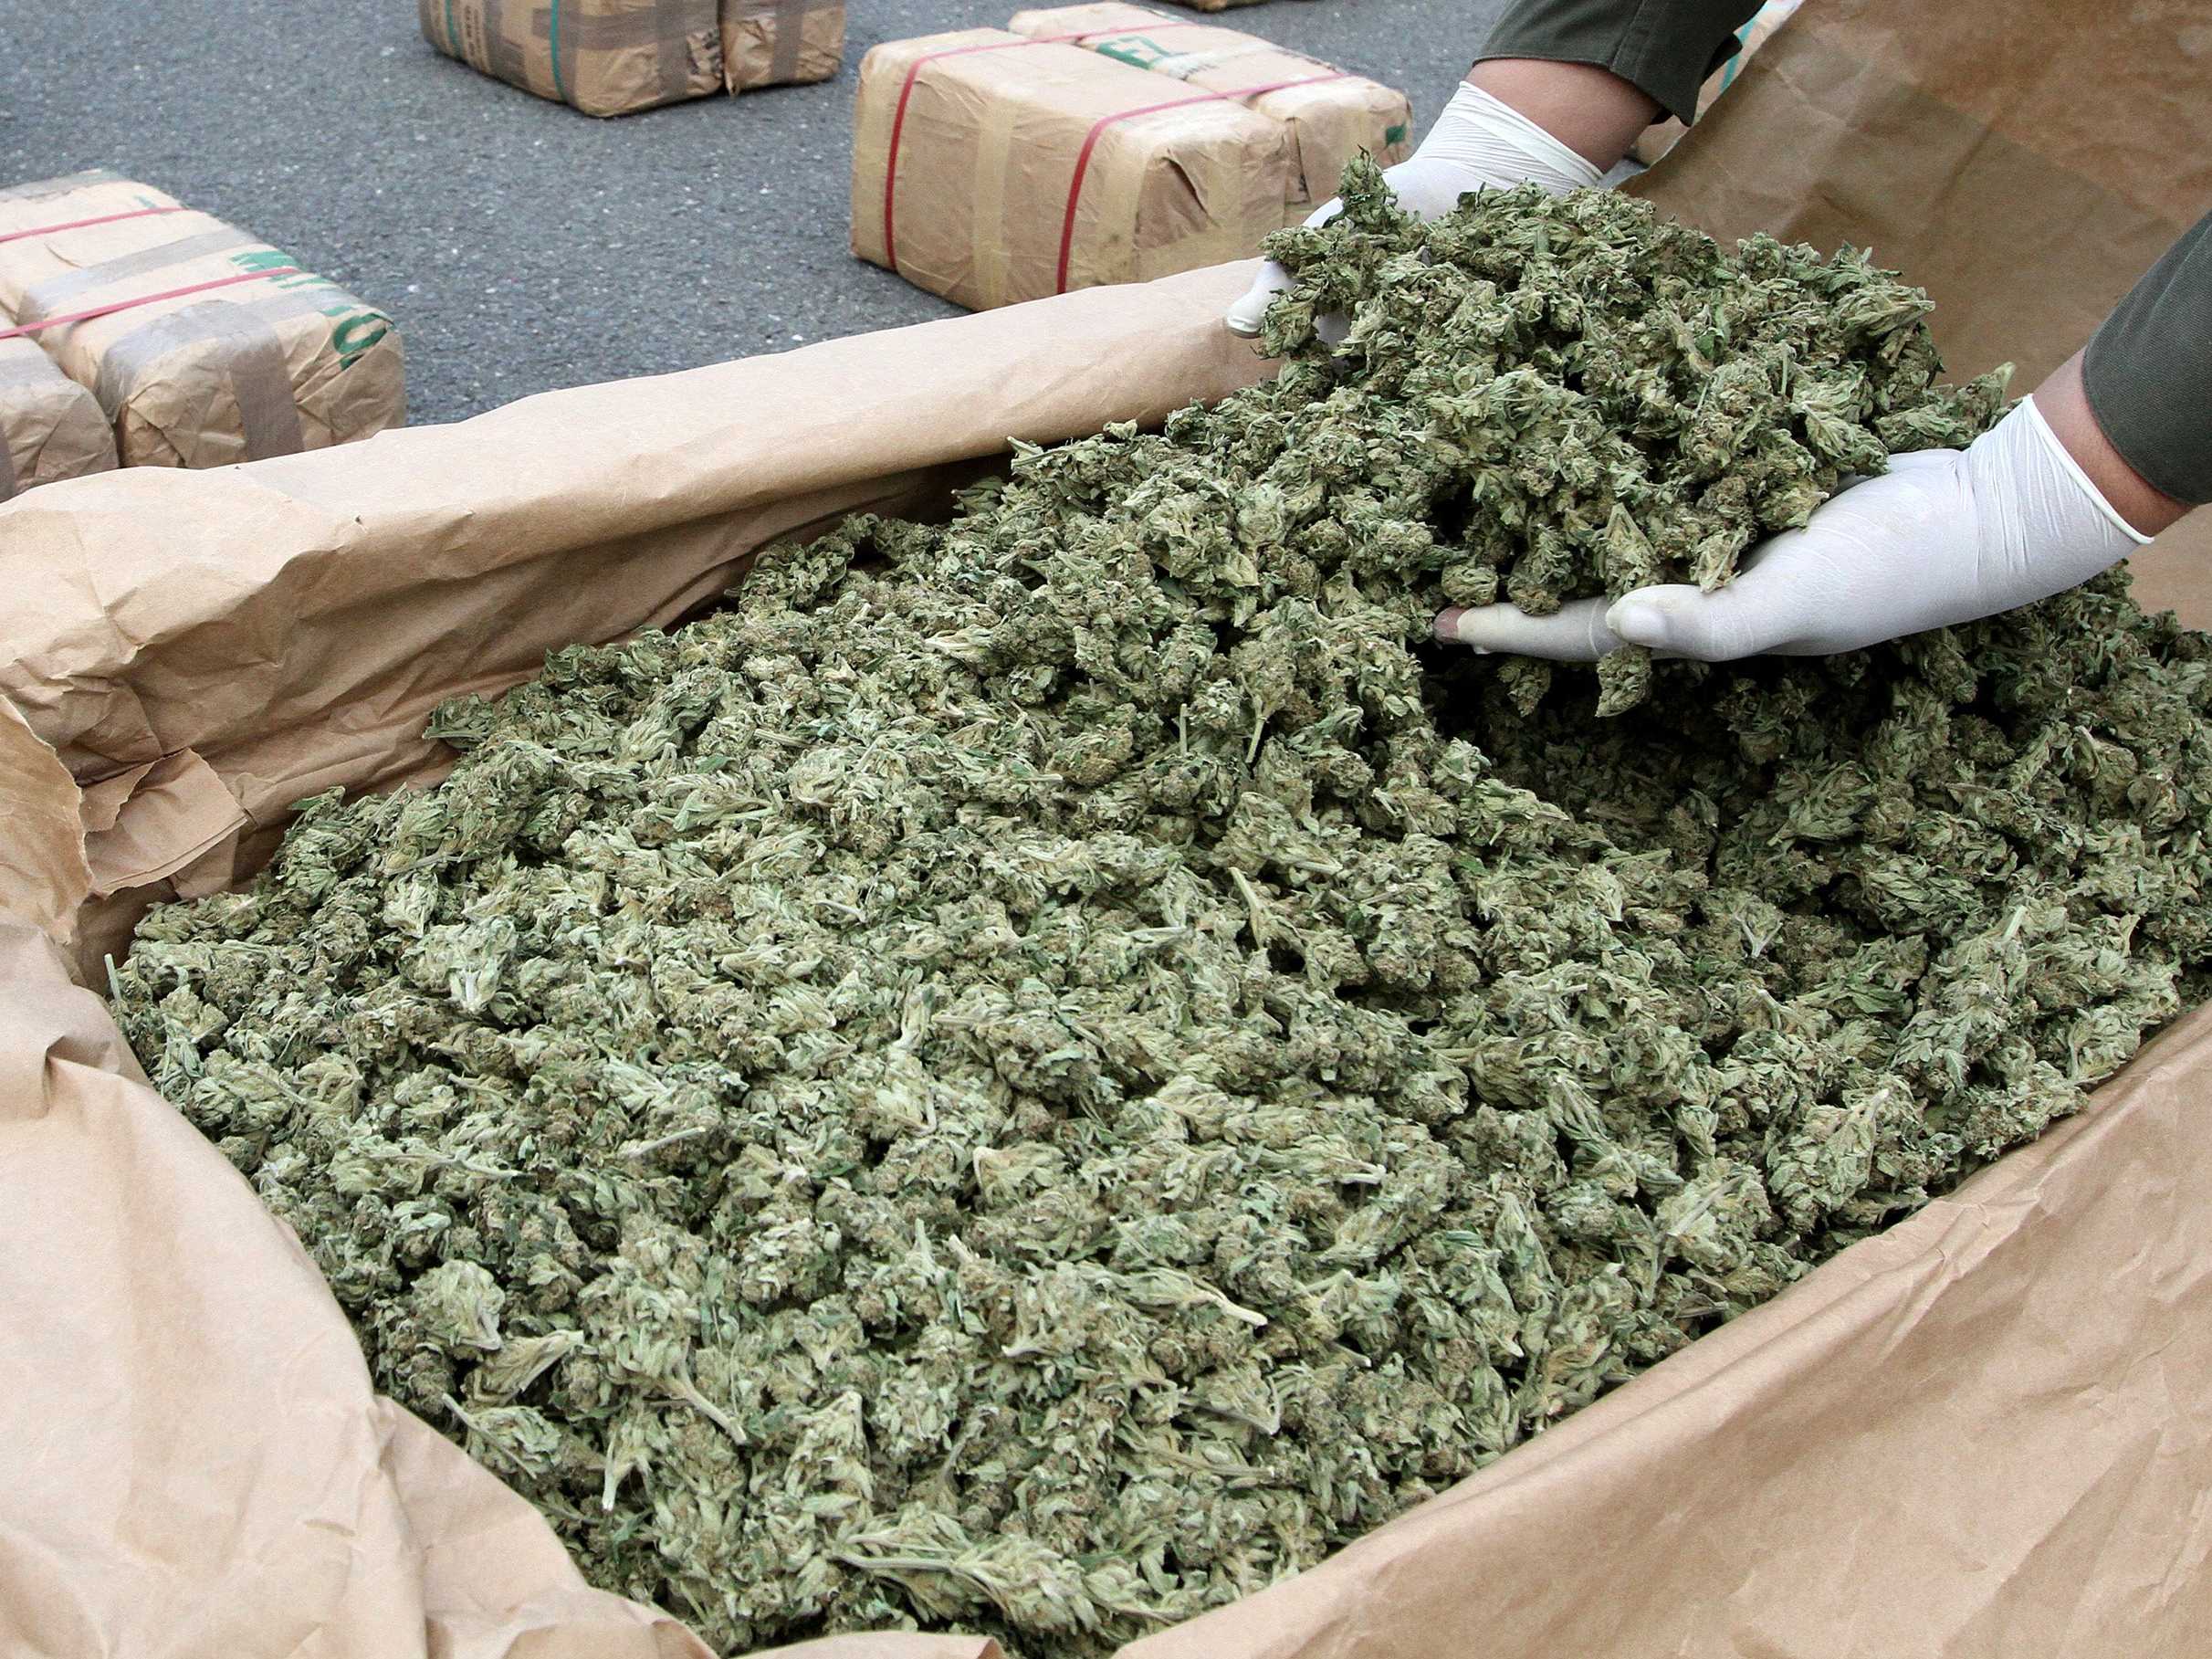  Cardito, sorpreso in via B. Nardo con 64 confezioni di marijuana: arrestato